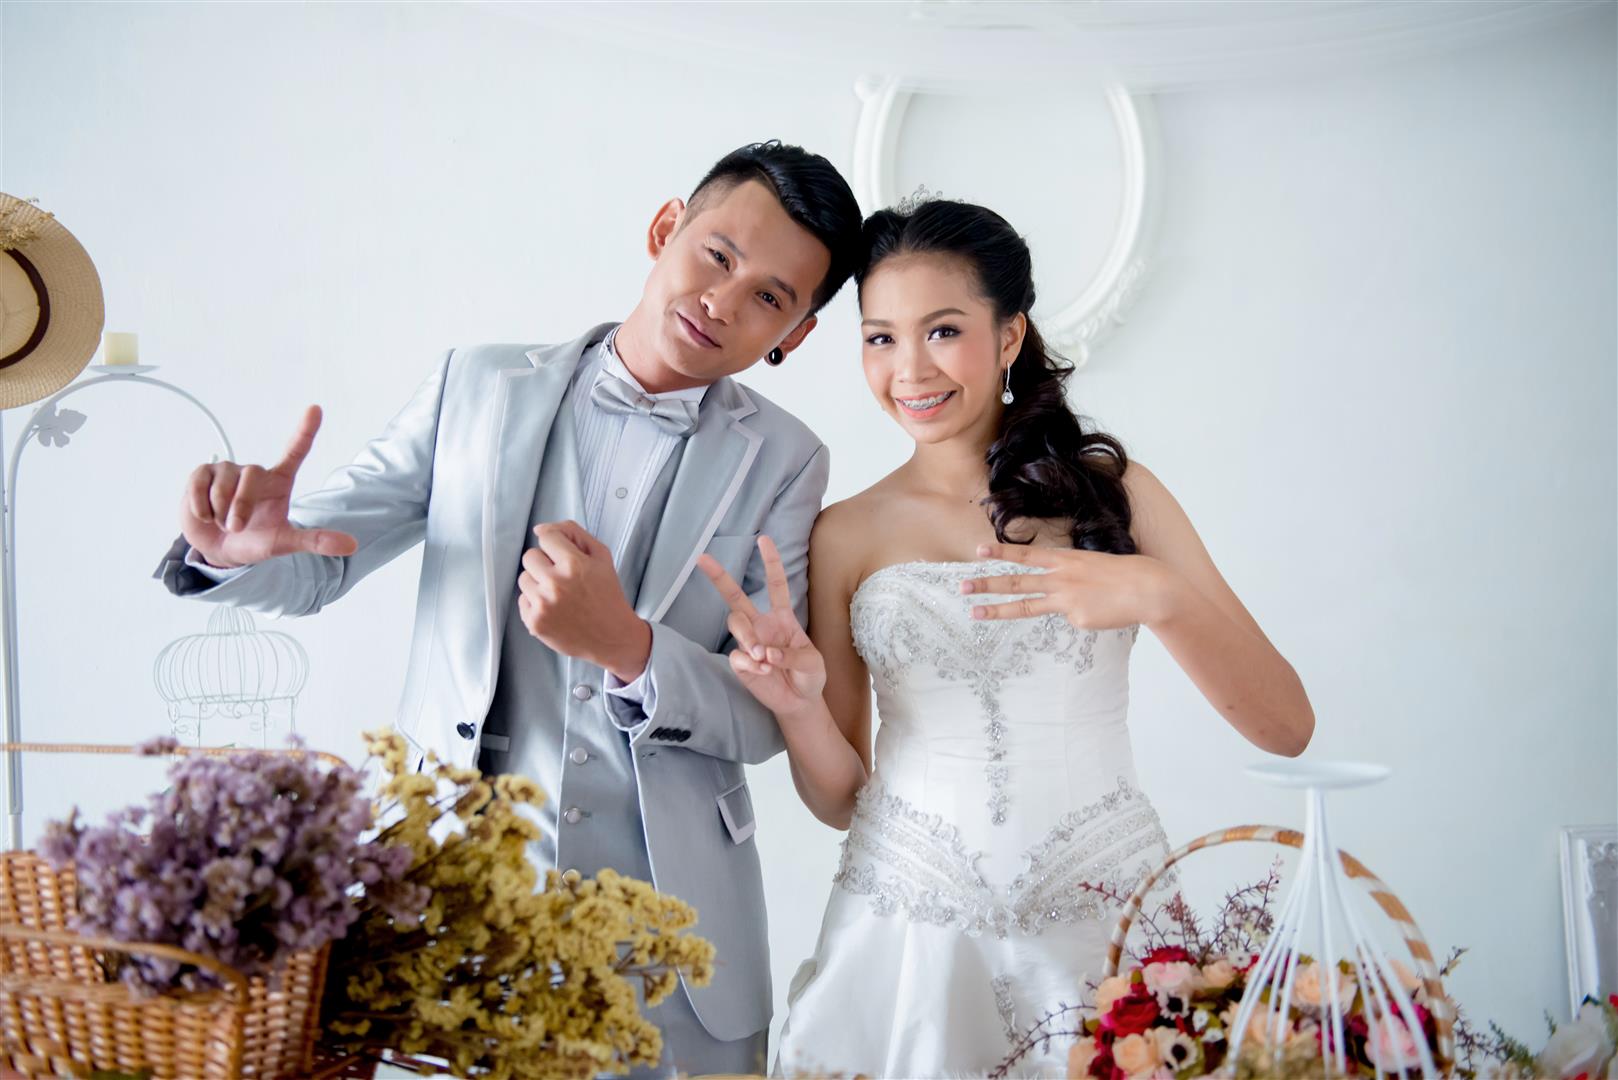 ถ่ายรูปแต่งงาน ชุดไทย ชุดเจ้าสาว เช่าชุดแต่งงาน ถ่ายรูปแต่งงานราคาถูก ถ่ายภาพ แต่งงาน ถ่ายรูป แต่งงาน ร้านถ่ายรูปแต่งงาน สตูดิโอ 